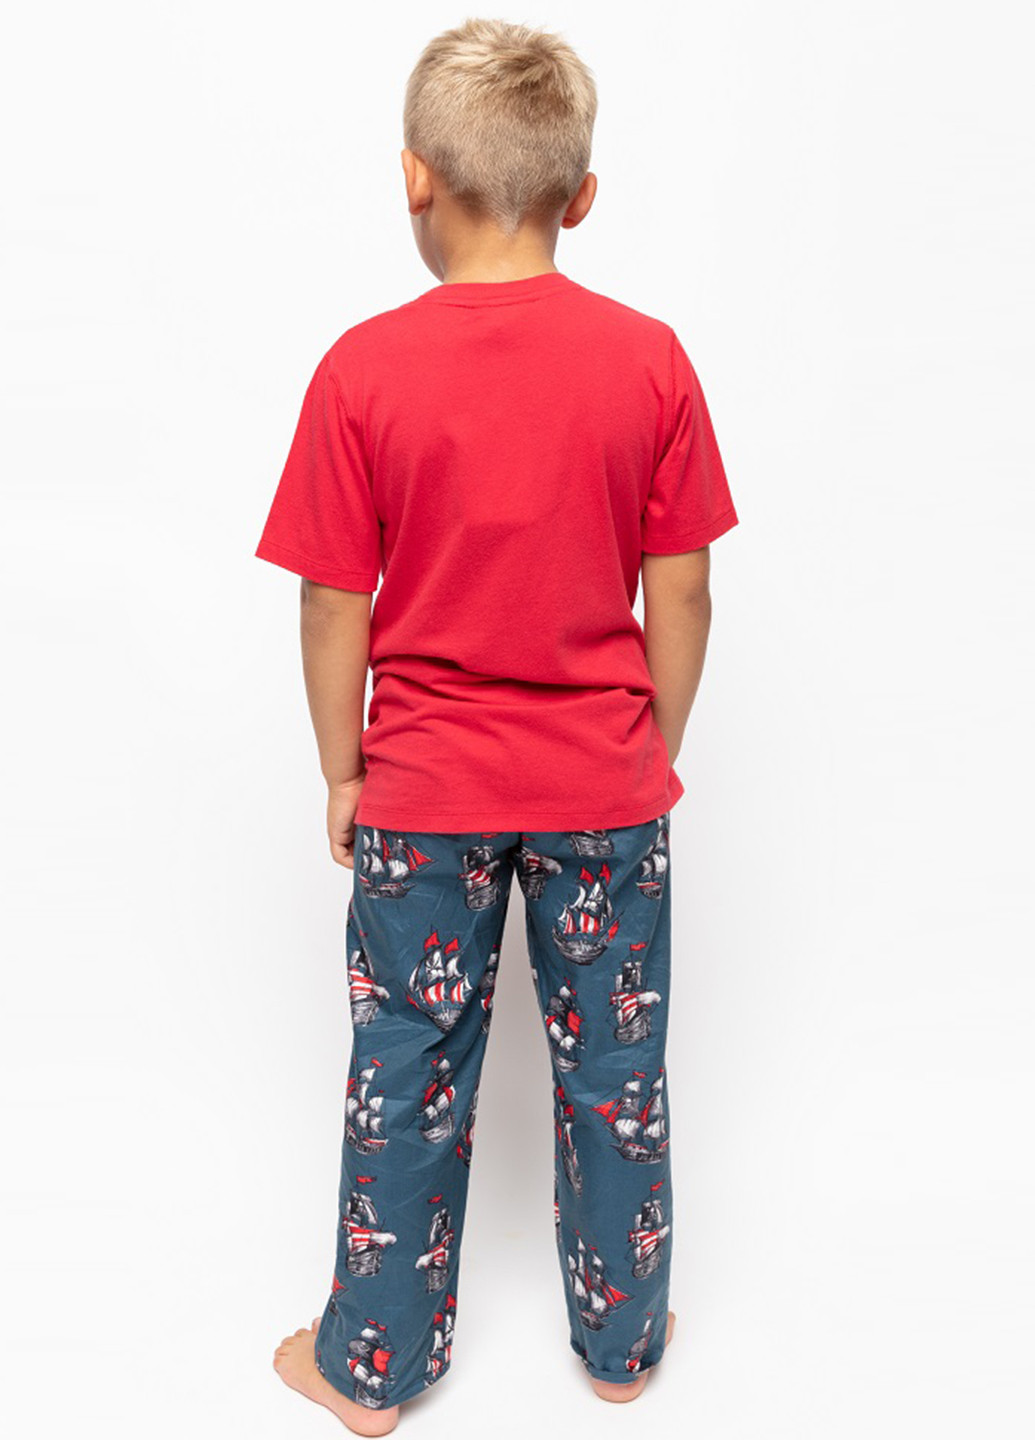 Комбинированная всесезон пижама (футболка, брюки) футболка + брюки Cyberjammies